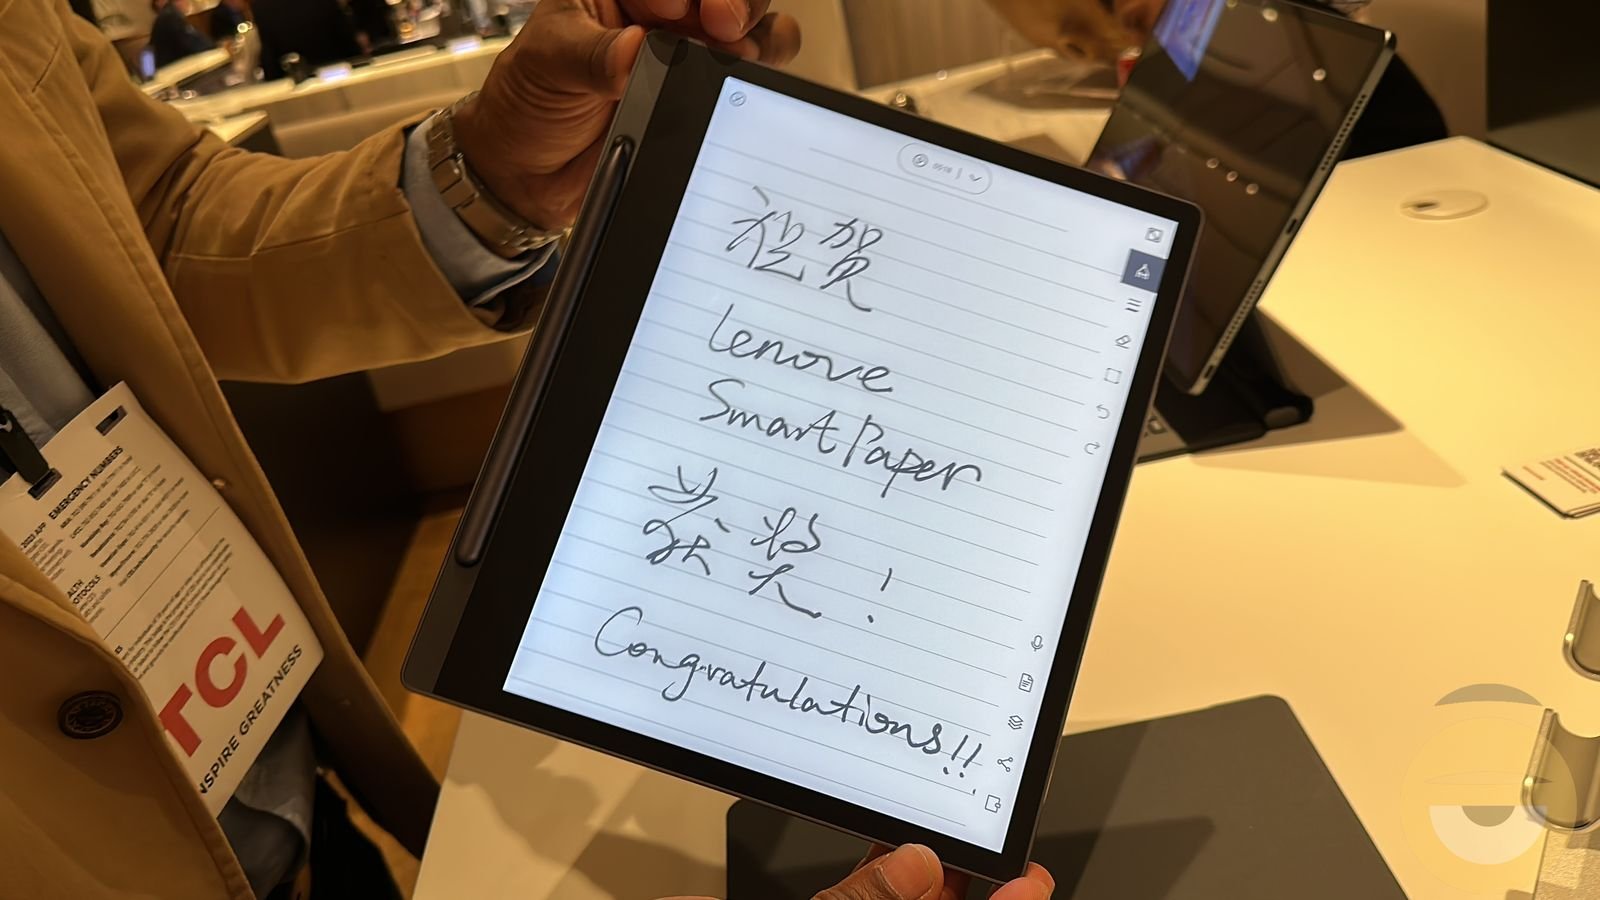 Το δικό της ψηφιακό σημειωματάριο με e-ink παρουσίασε η Lenovo, το Smart Paper